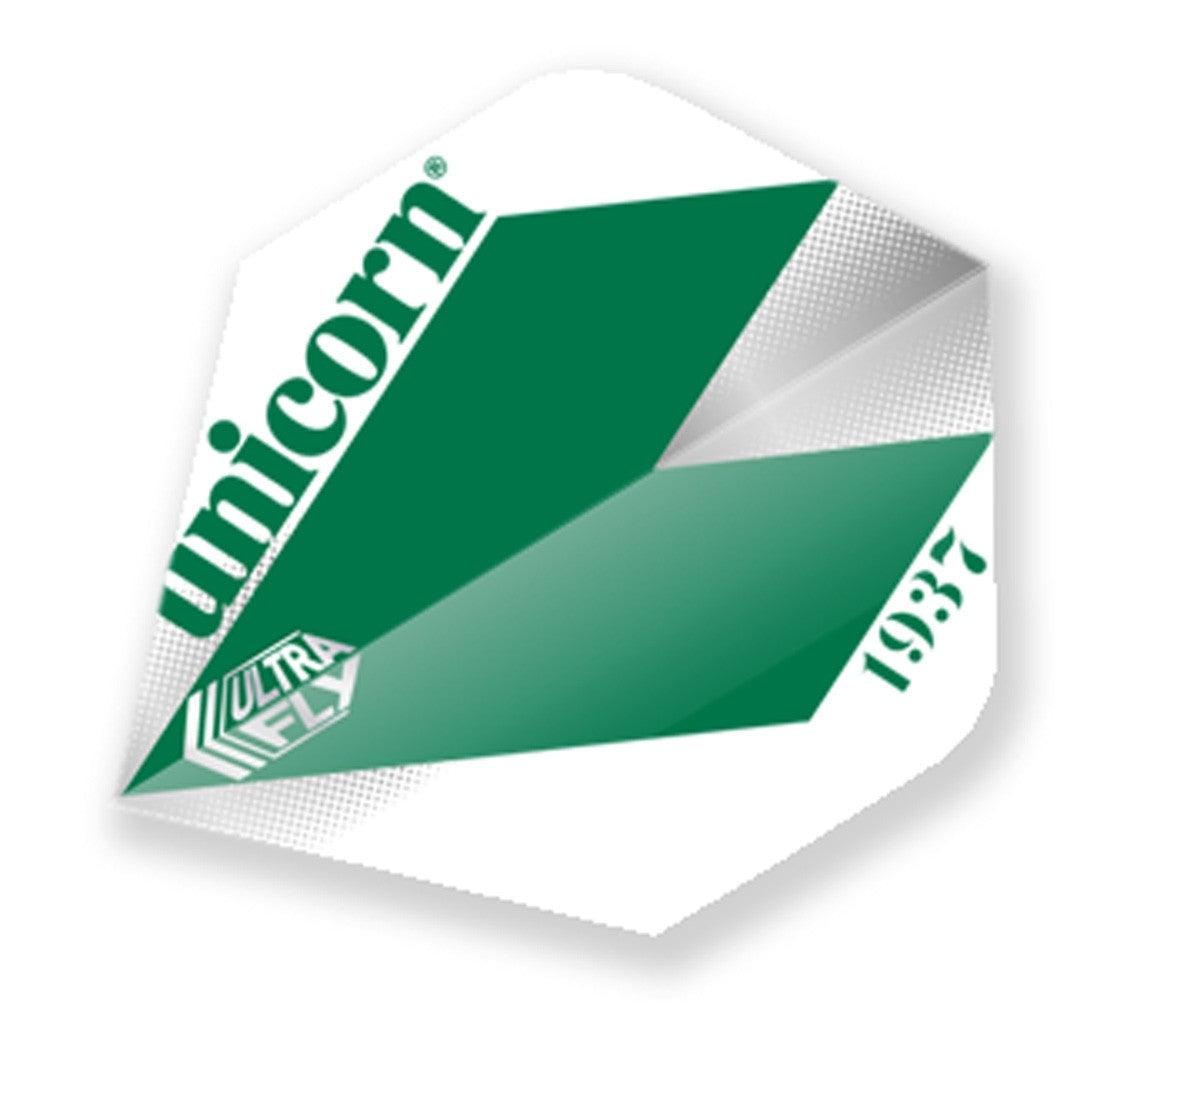 Unicorn Classic Dart Flight - Comet Green-Dart Flights-Pro Sports